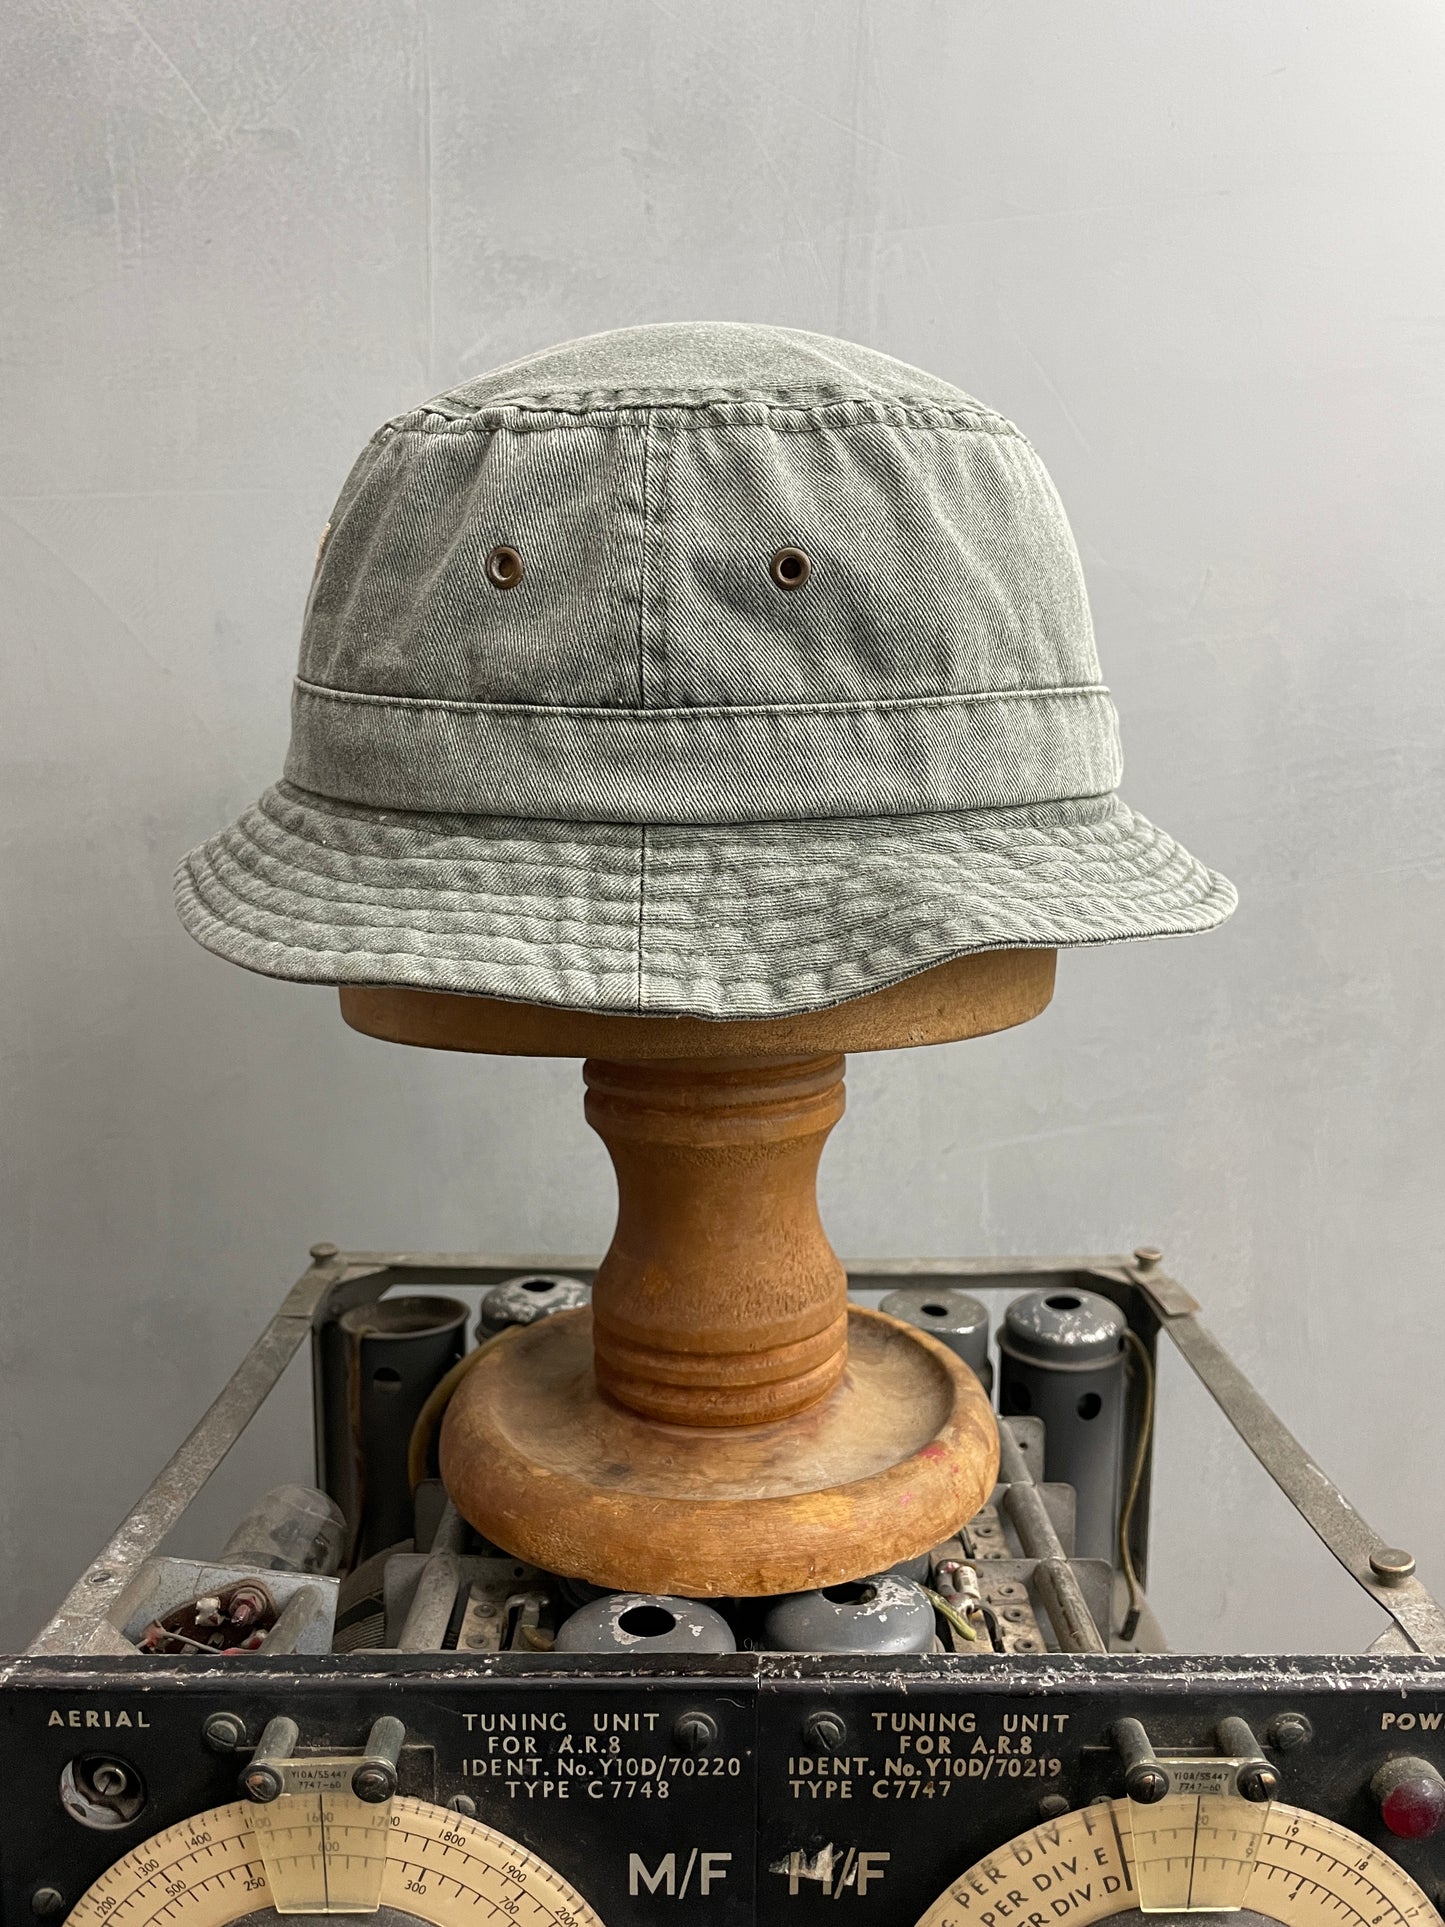 Faded Daytona Beach Bucket Hat